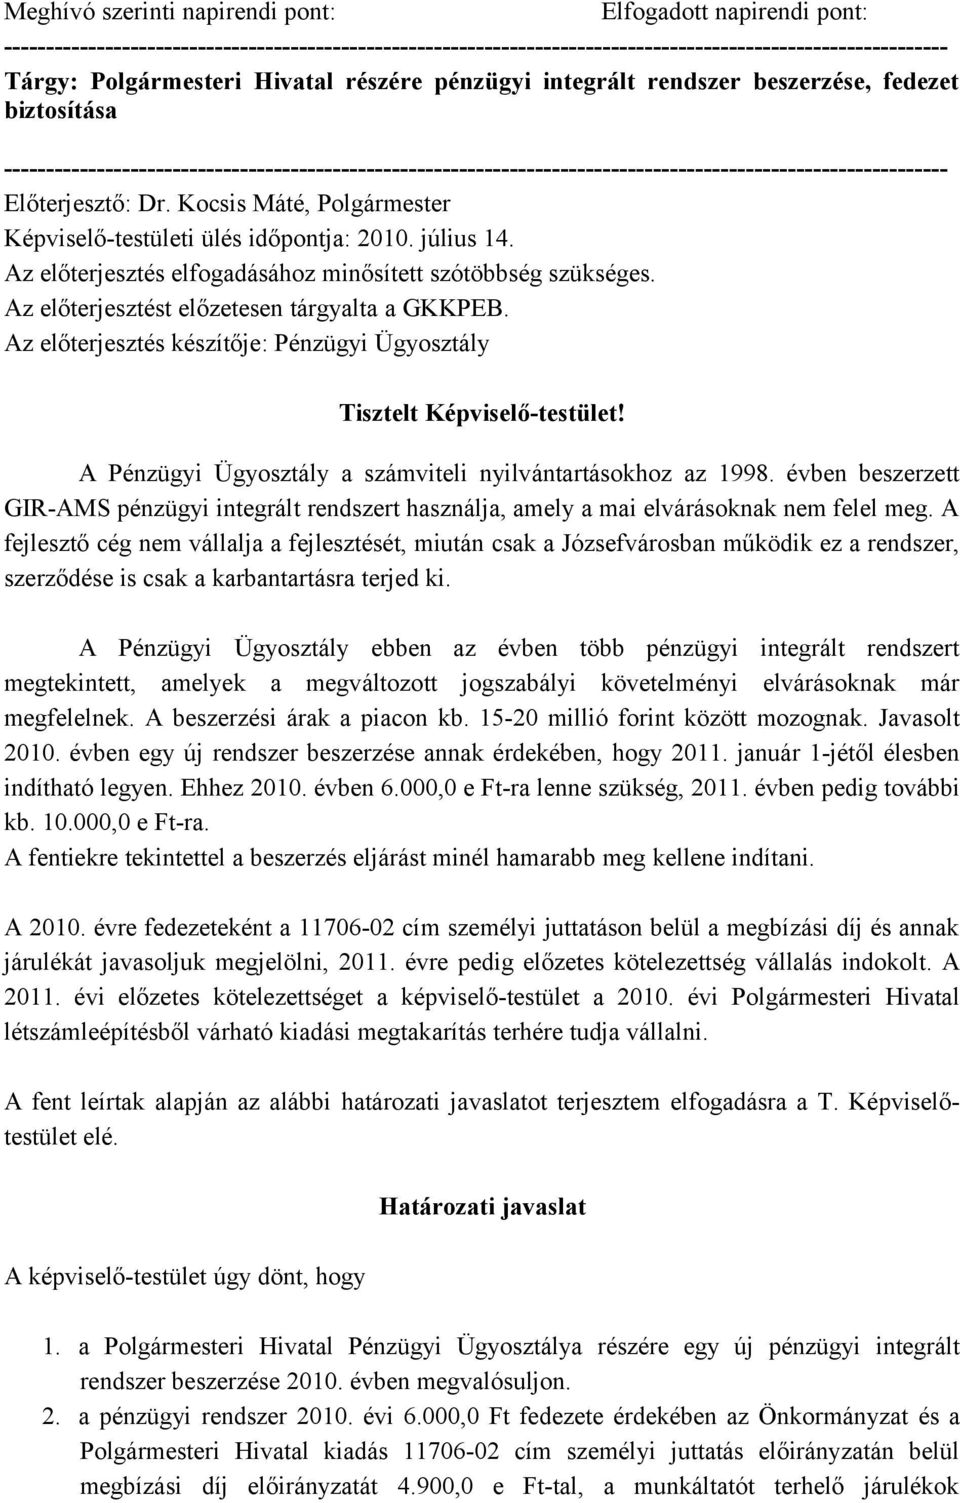 Előterjesztő: Dr. Kocsis Máté, Polgármester Képviselő-testületi ülés időpontja: 2010. július 14. Az előterjesztés elfogadásához minősített szótöbbség szükséges.